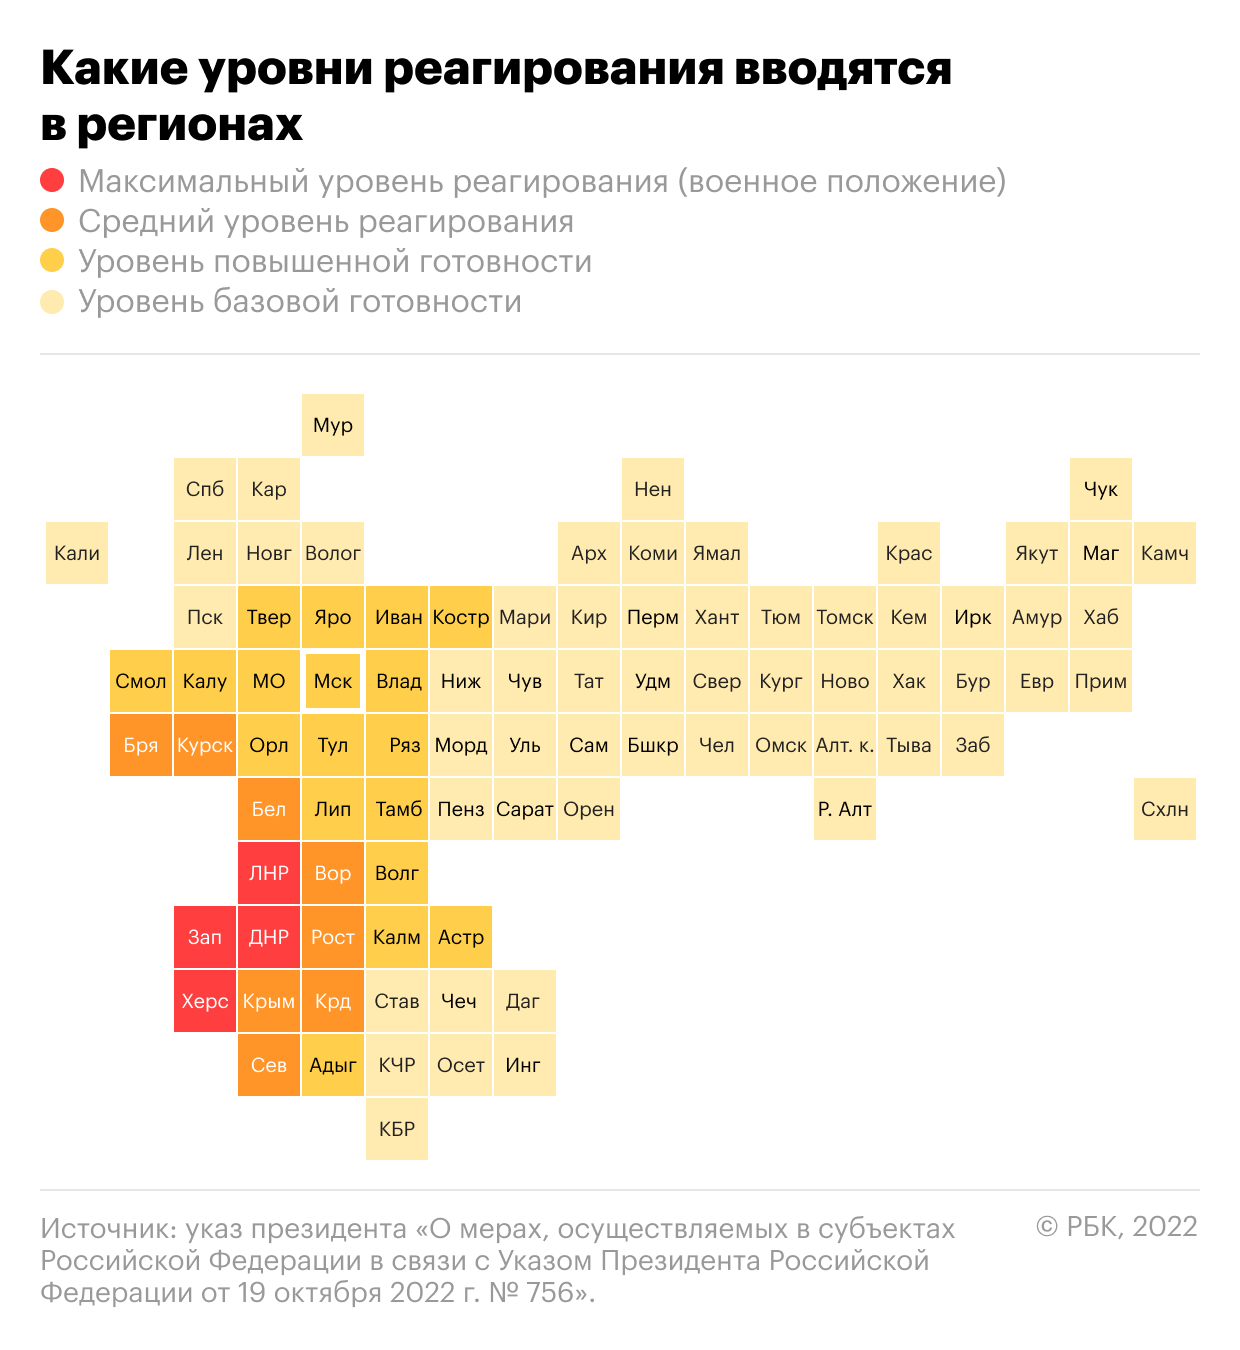 В Курской области запретят запуск фейерверков до конца января"/>













